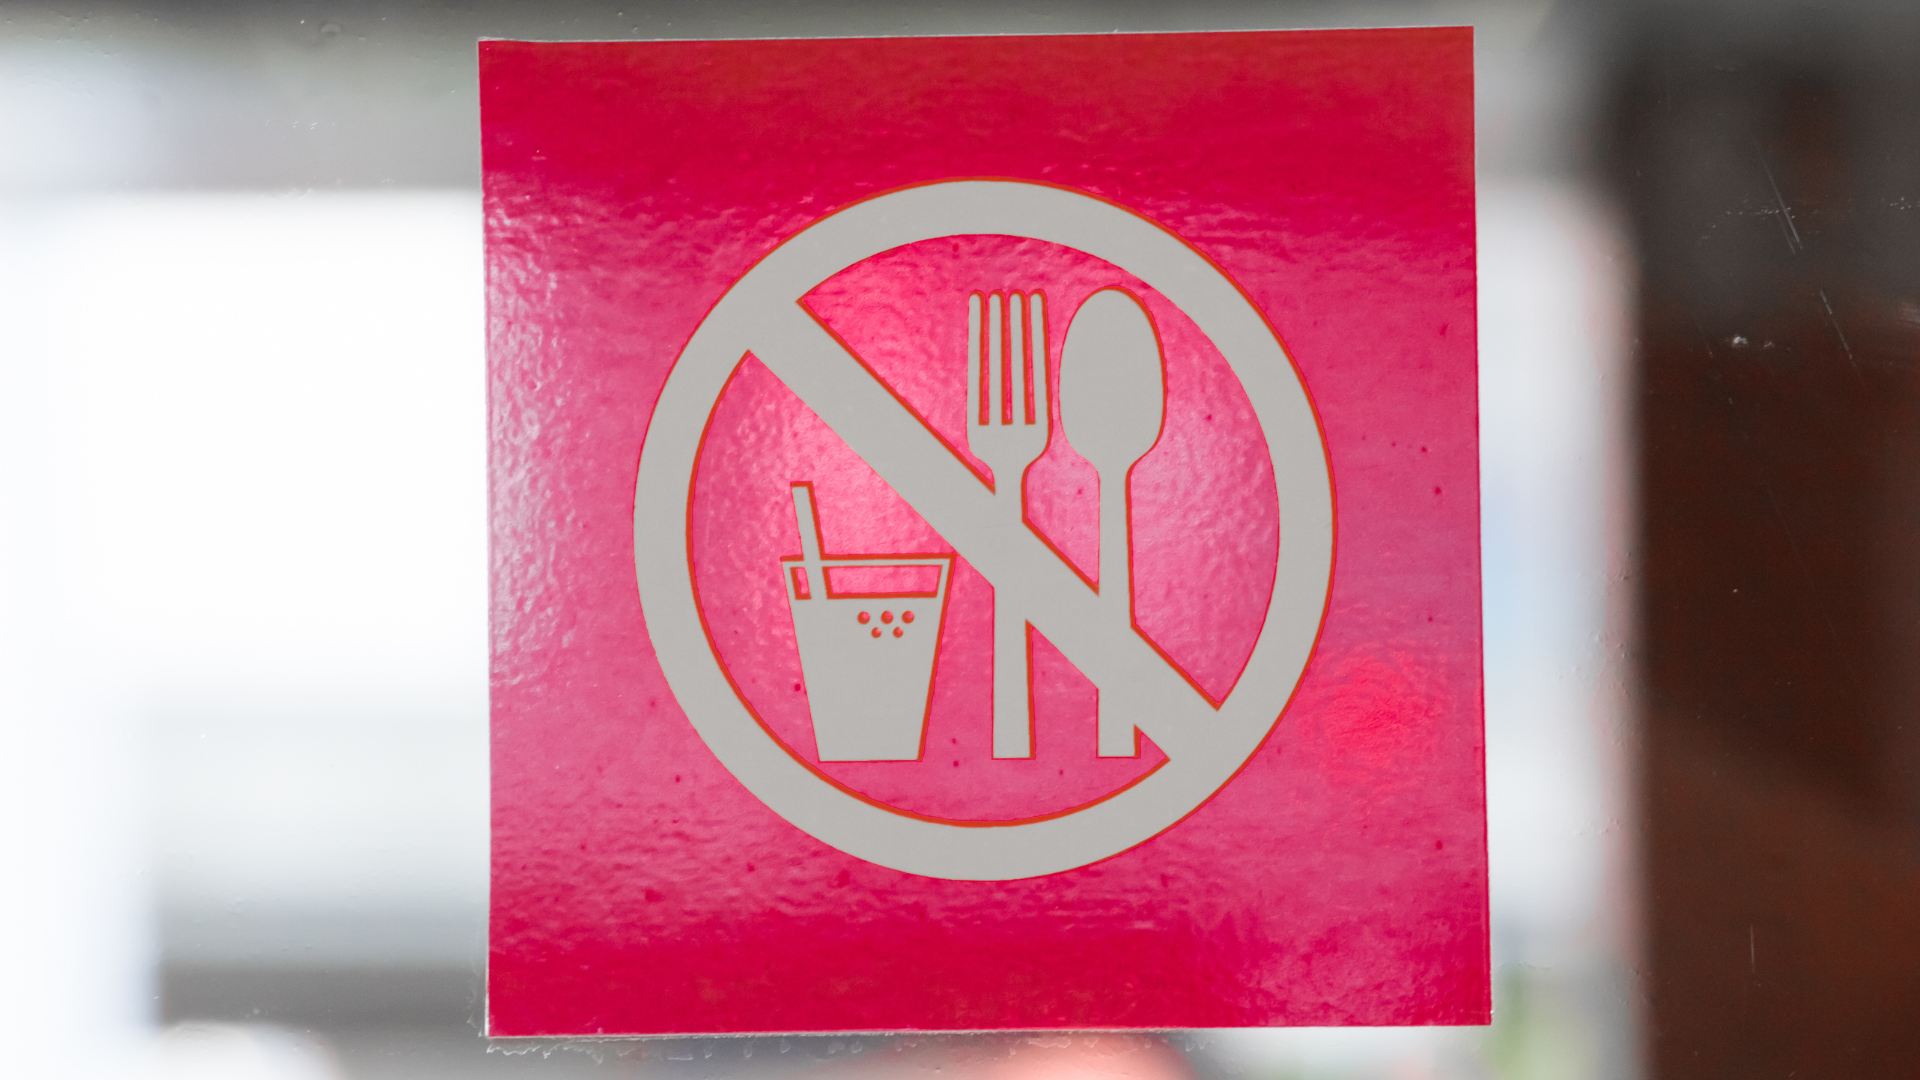 Prohibida la entrada de bebidas y comida / Unsplash